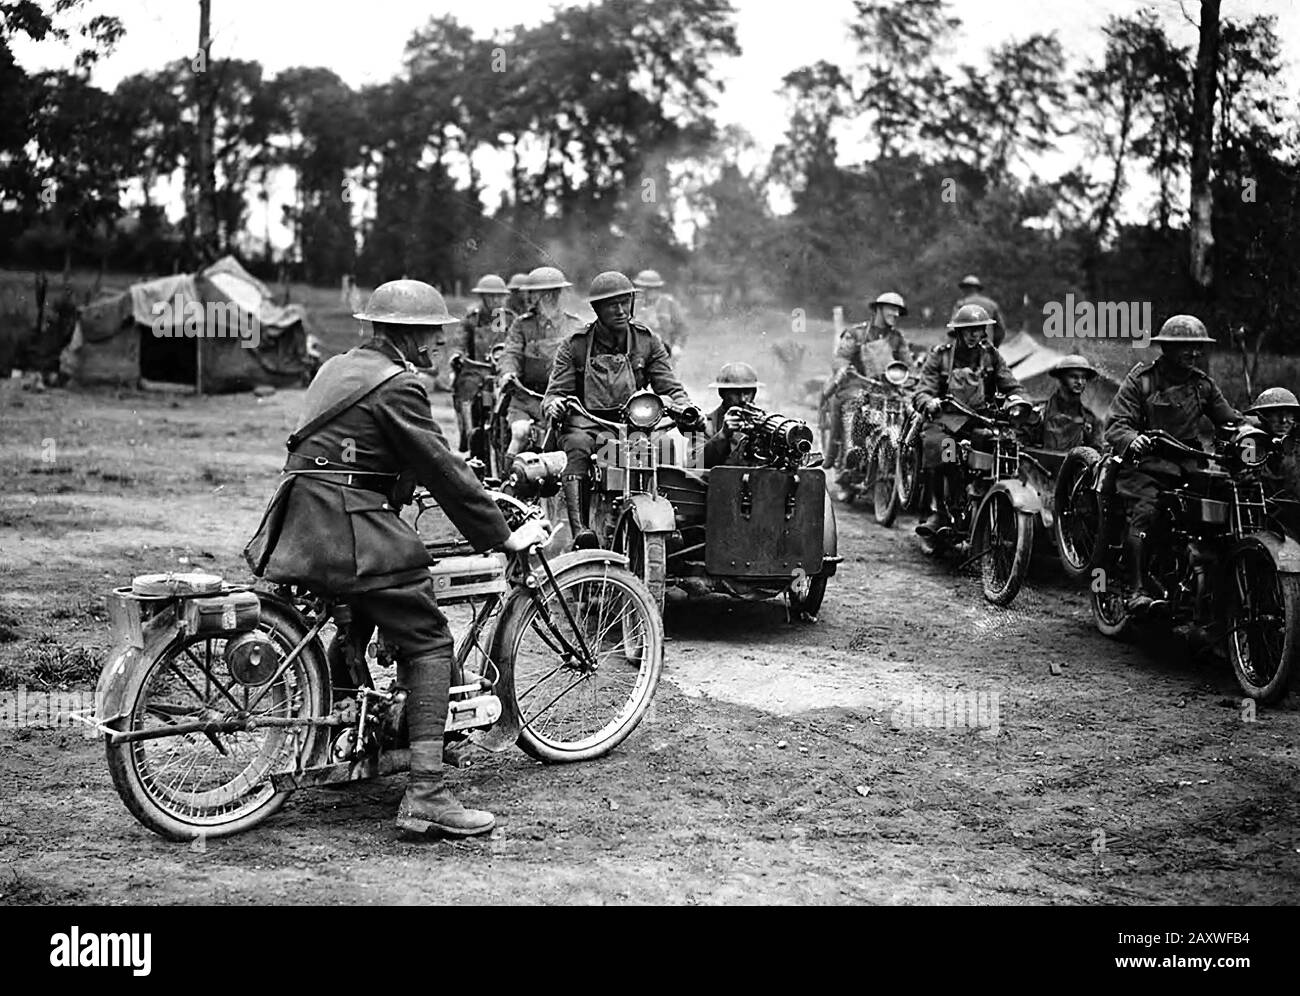 La technologie et les armes de la Première Guerre mondiale, 1914-1918 Banque D'Images